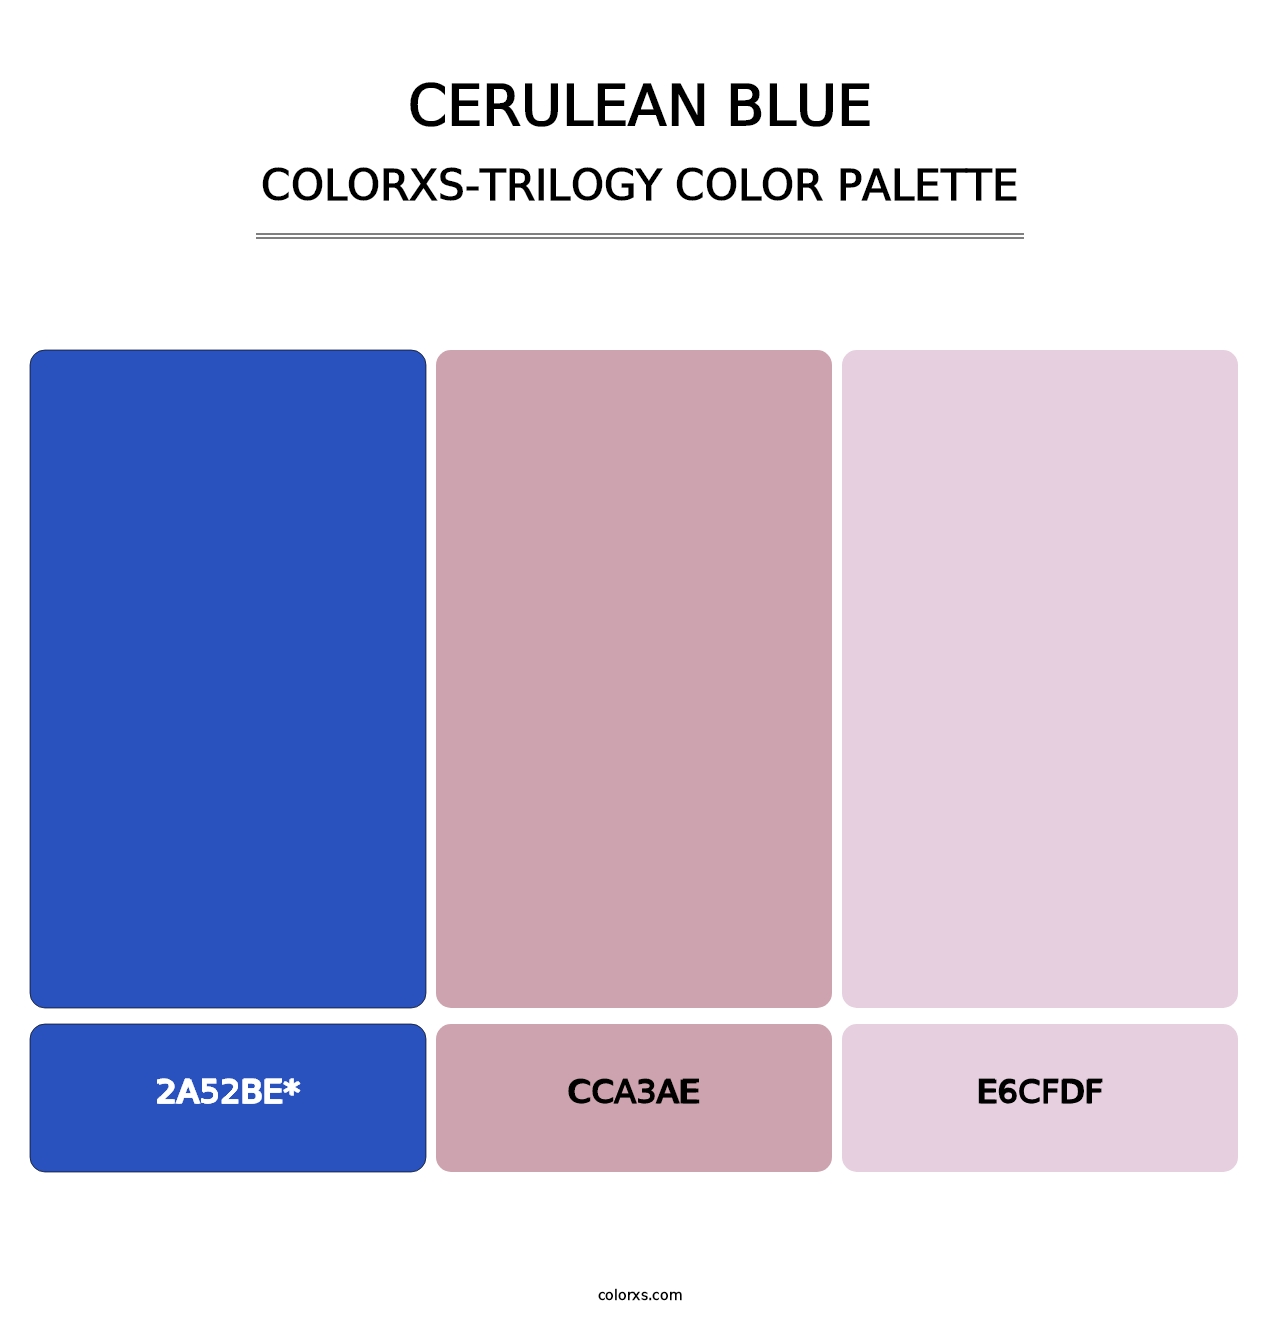 Cerulean blue - Colorxs Trilogy Palette